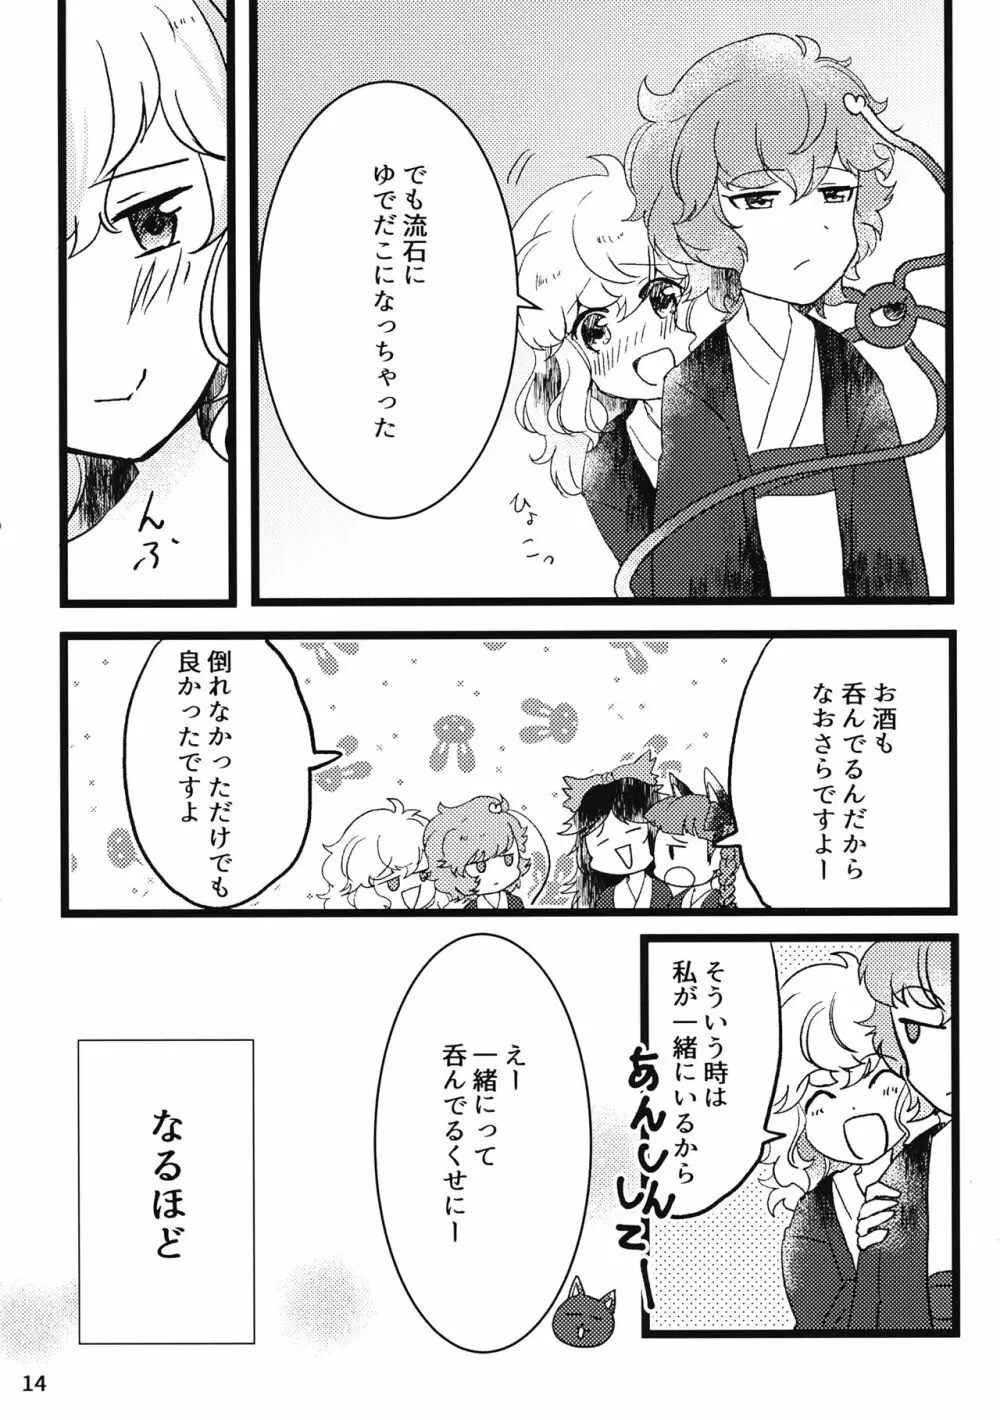 古明地酔いどれ風呂 - page15